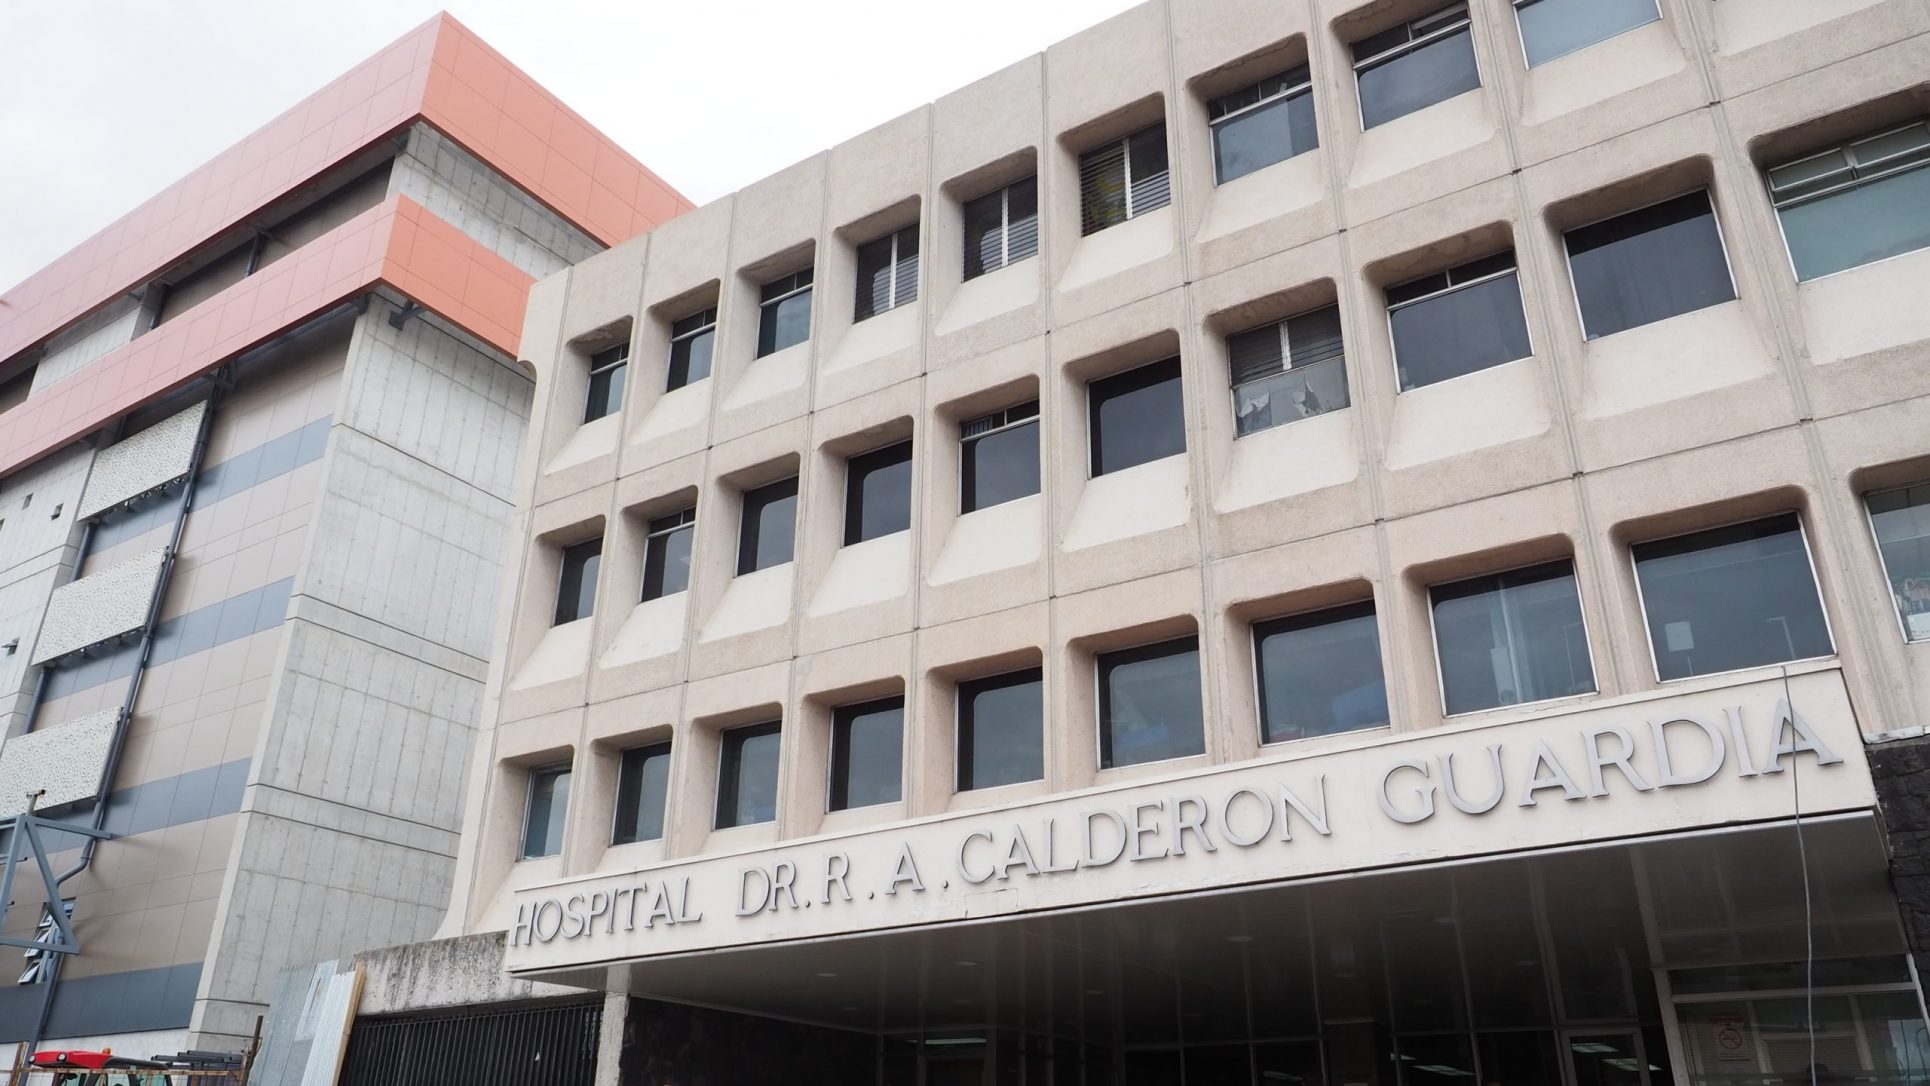 Hospital Calderón Guardia solo realiza TAC de emergencias; pacientes con cáncer claman por ayuda